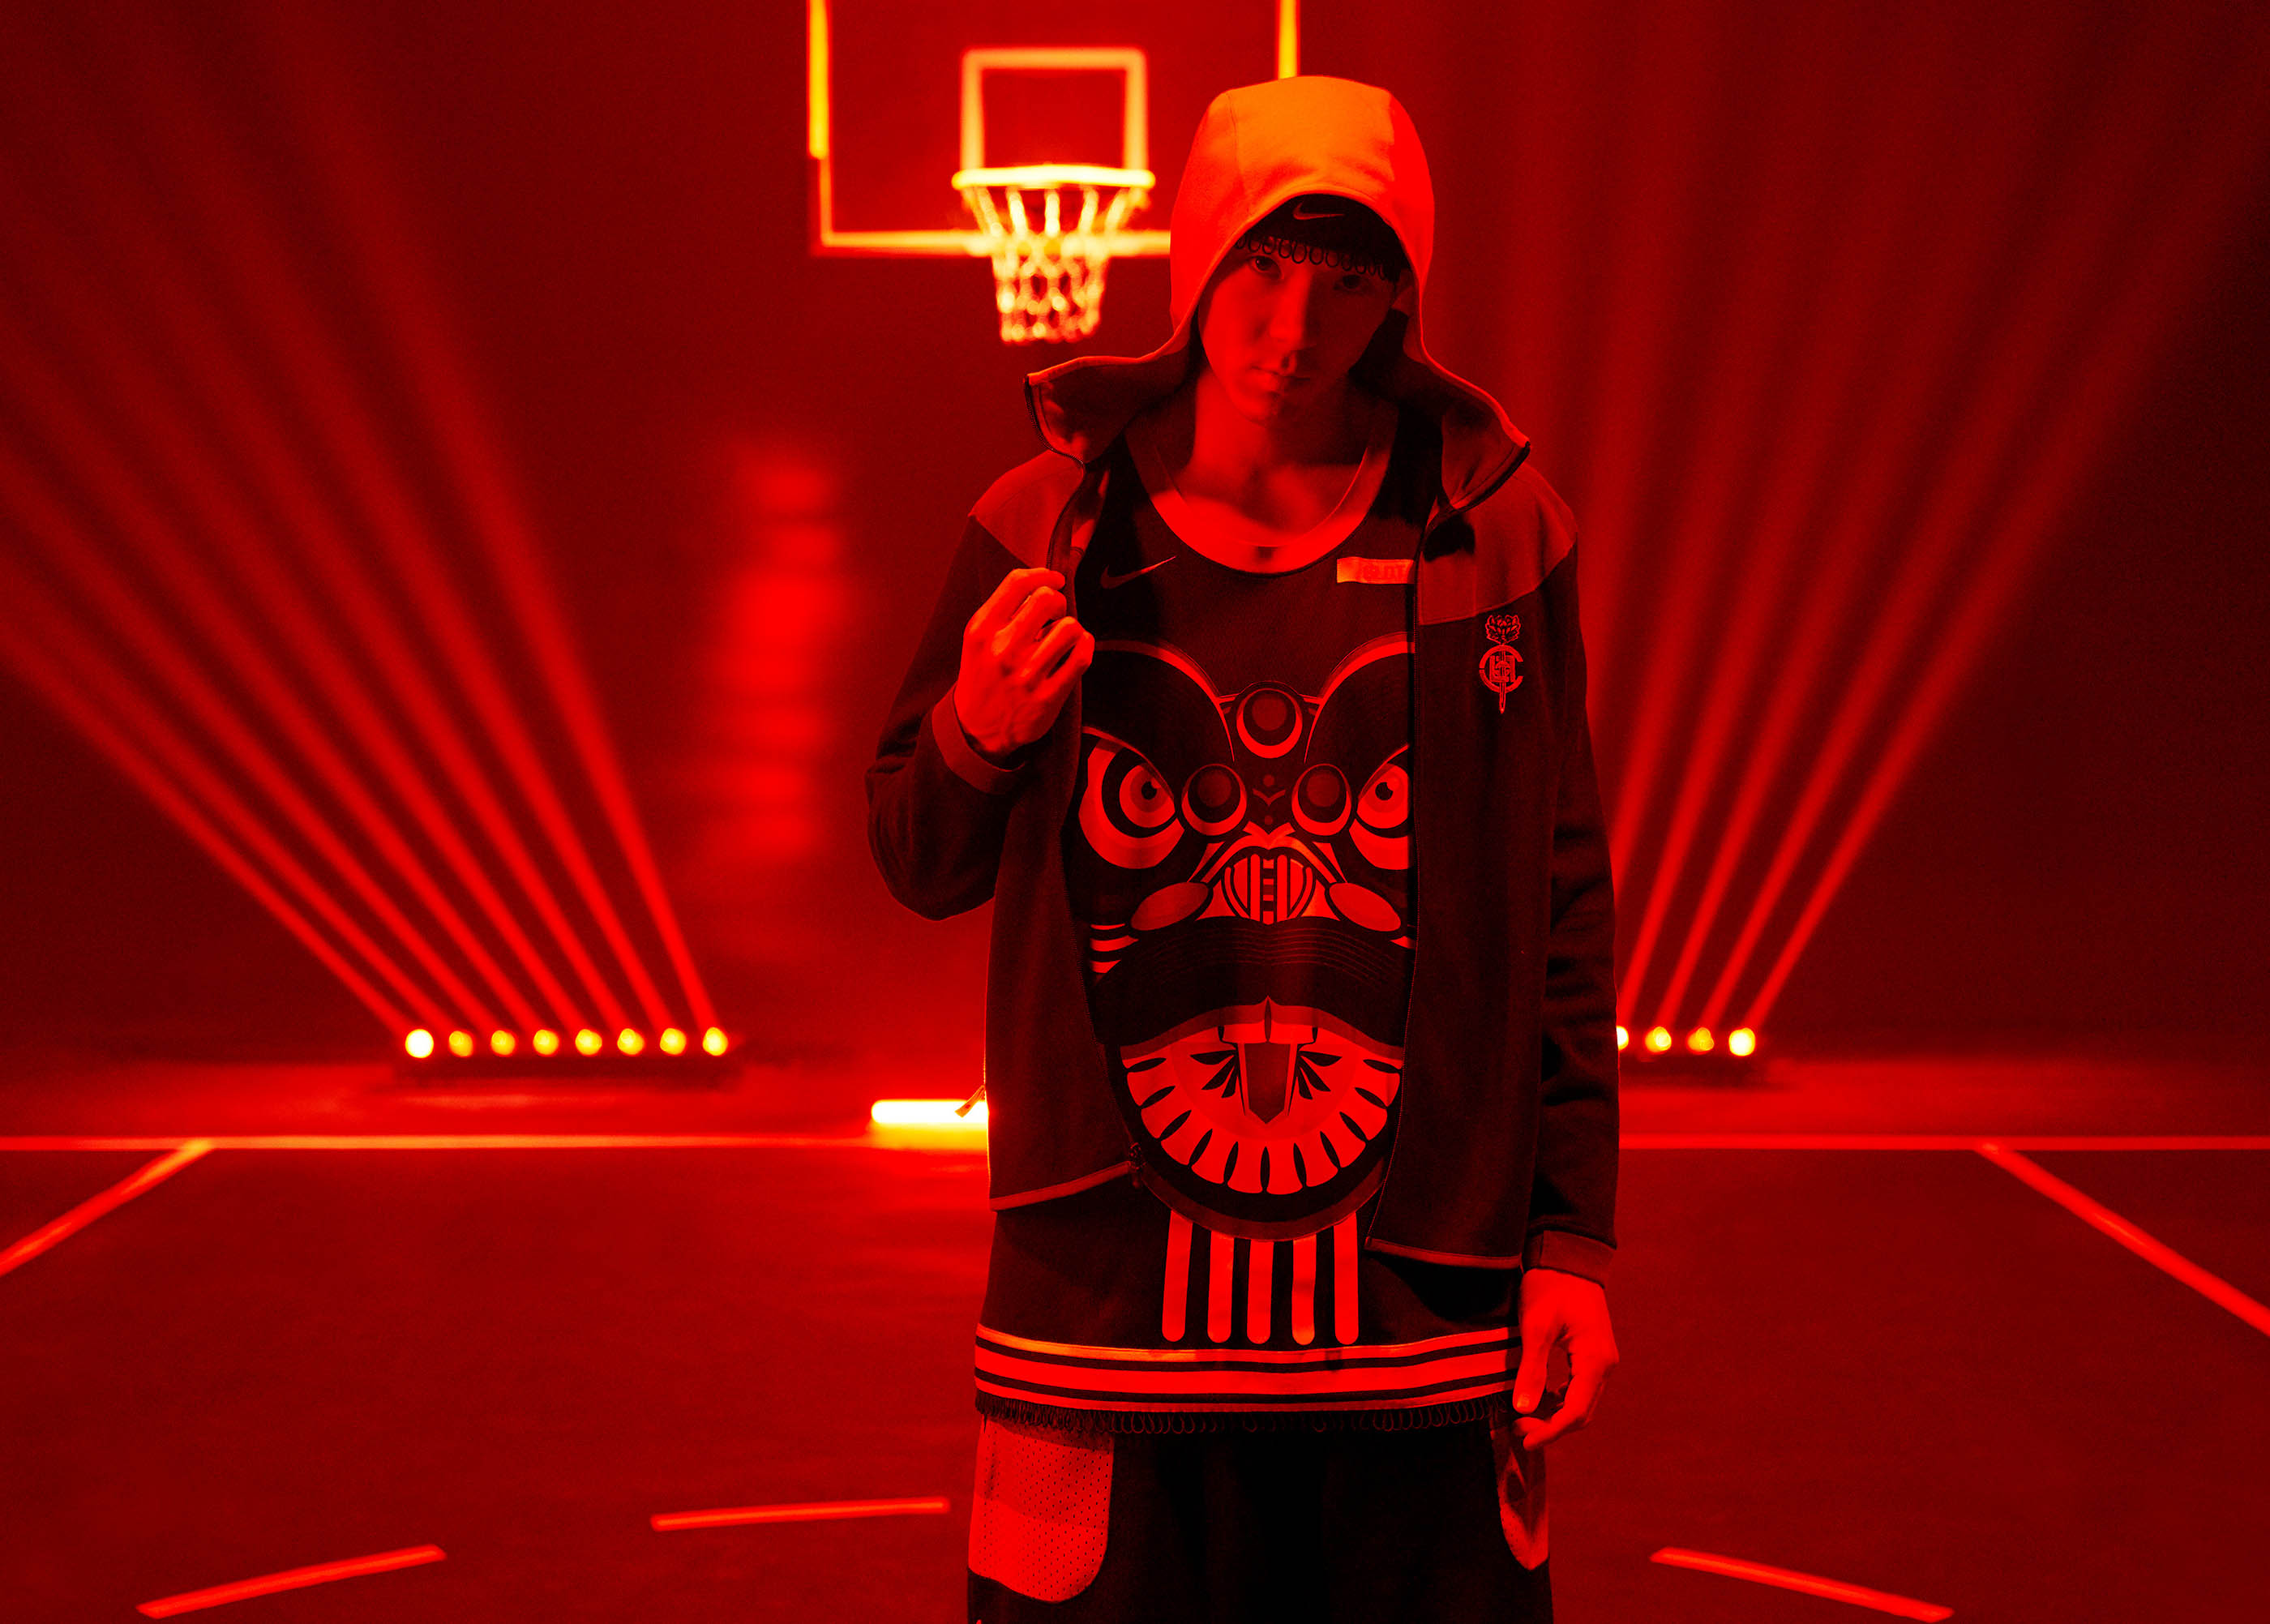 CLOT 携手耐克推出全新服装系列 架起篮球文化与中国传统文化之间的桥梁